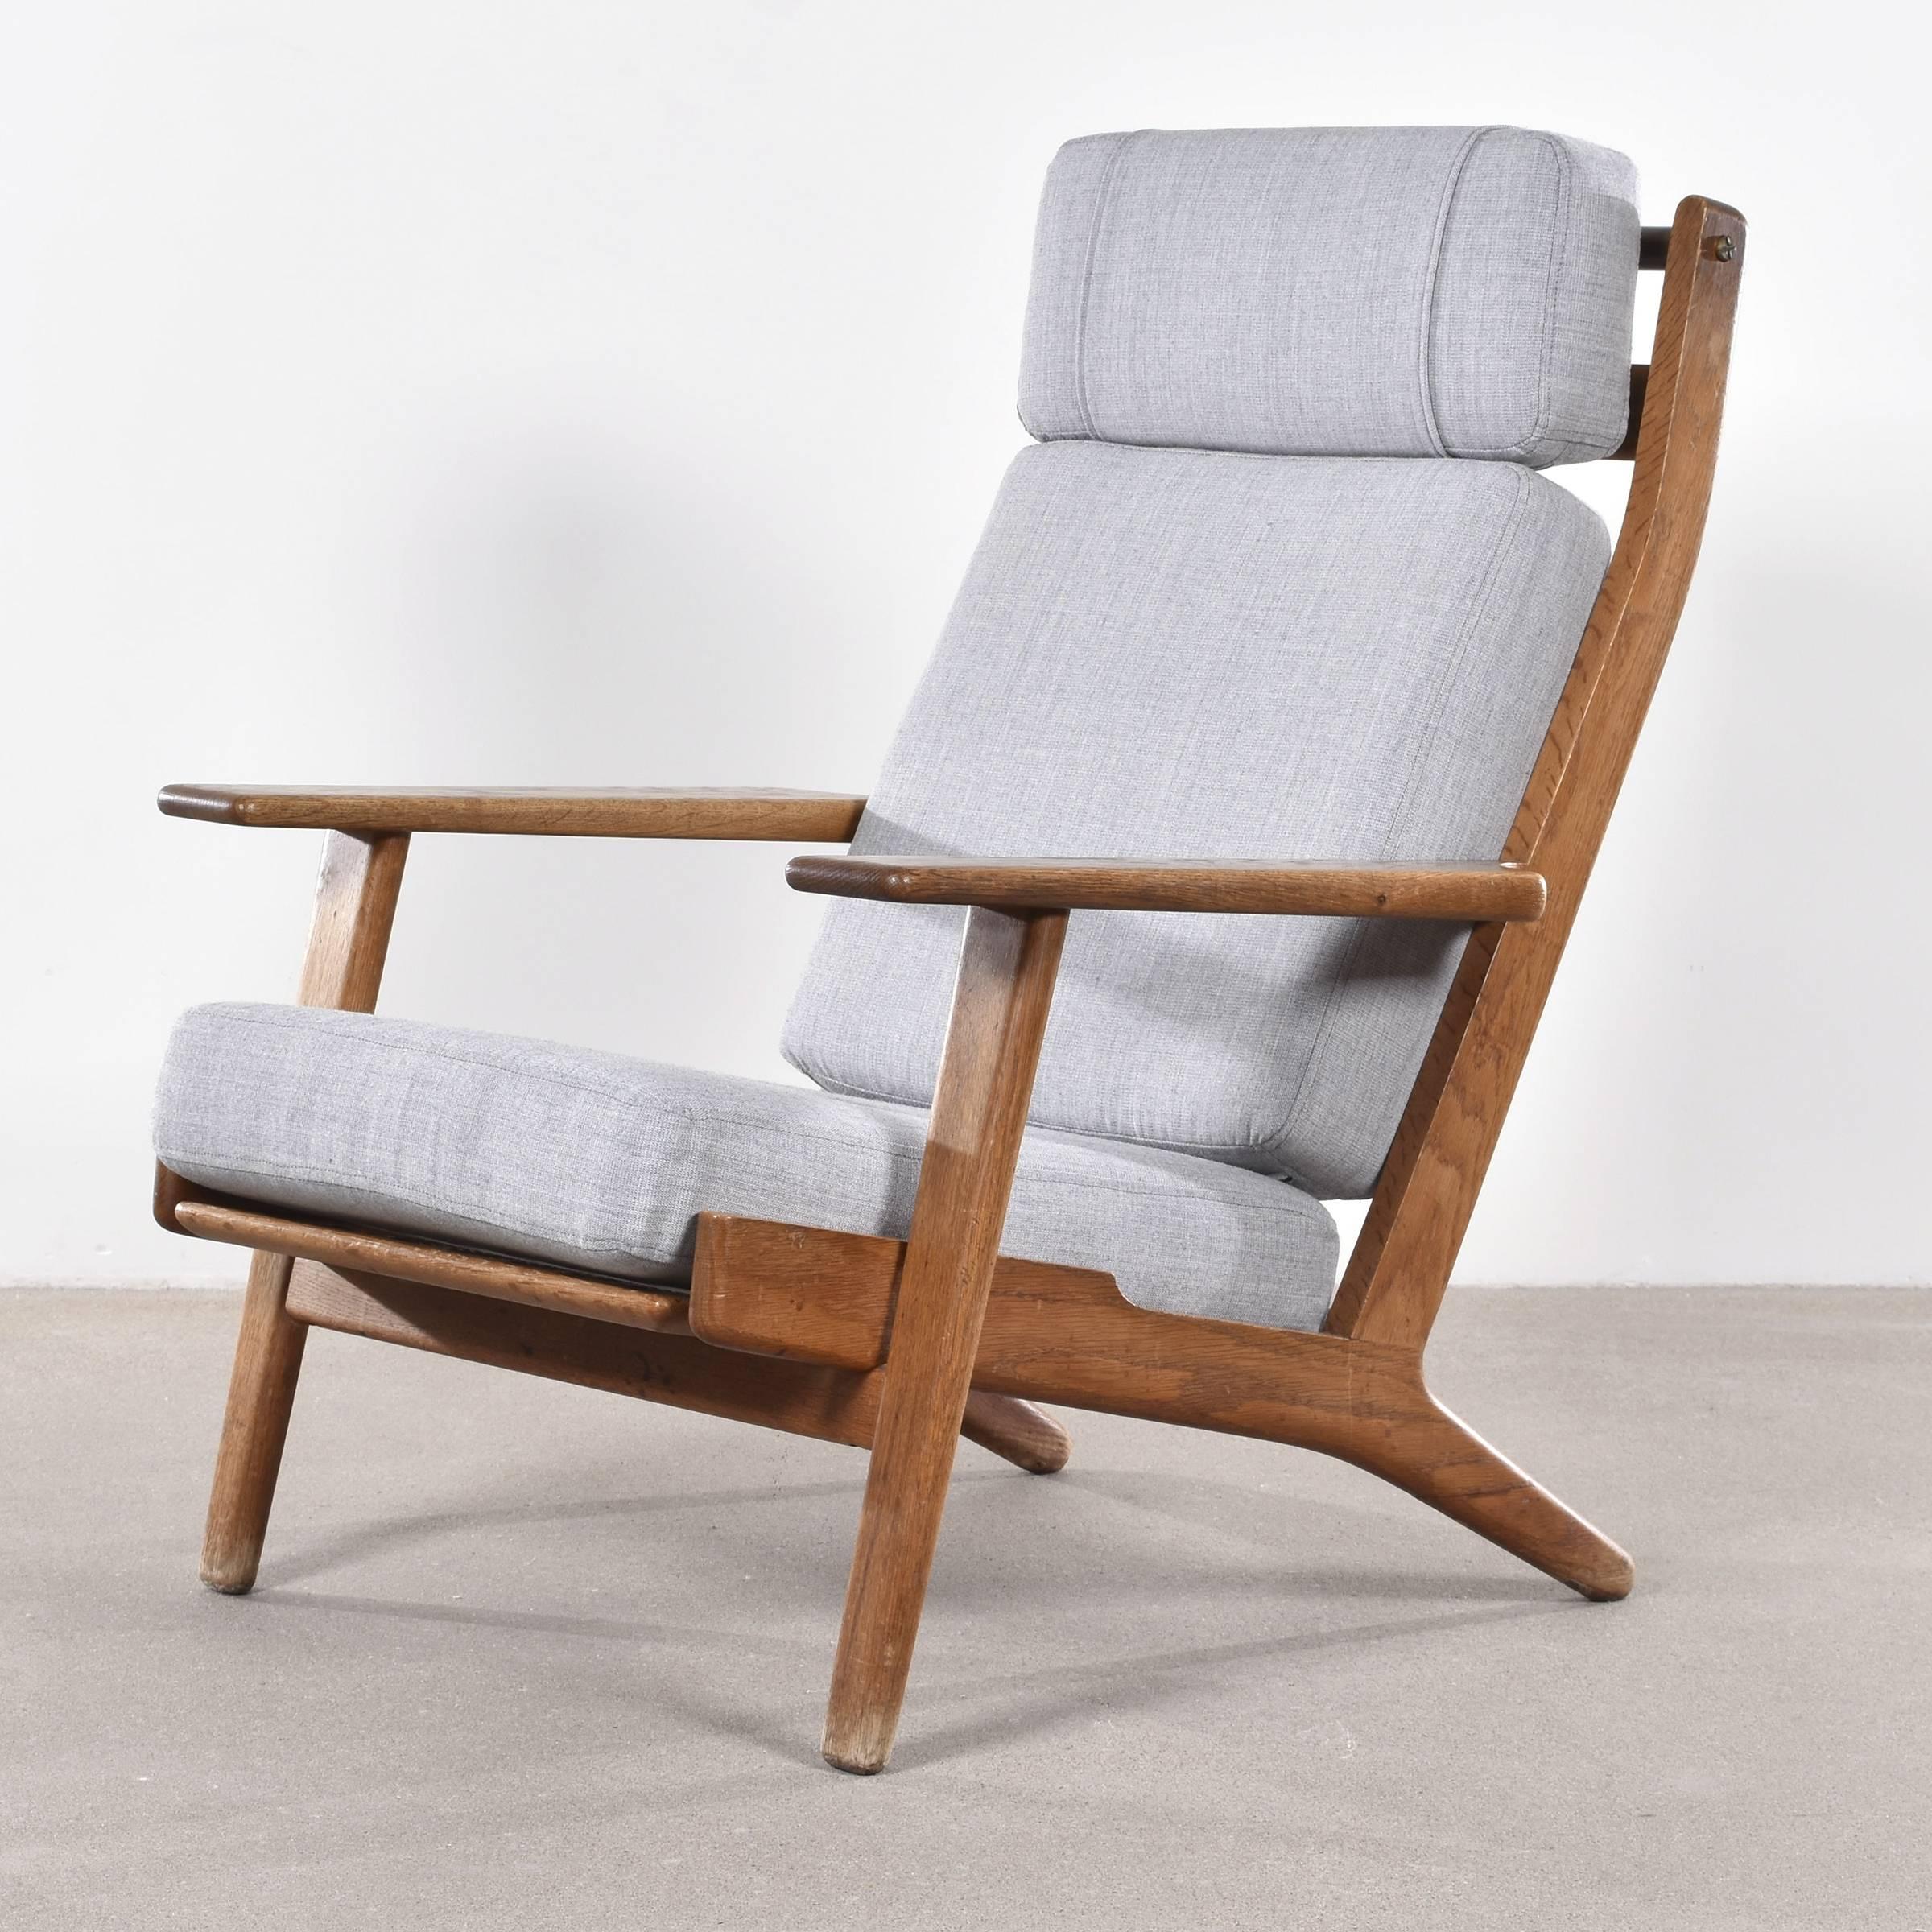 Danish Hans Wegner GE290 Lounge Chair for Getama, Denmark